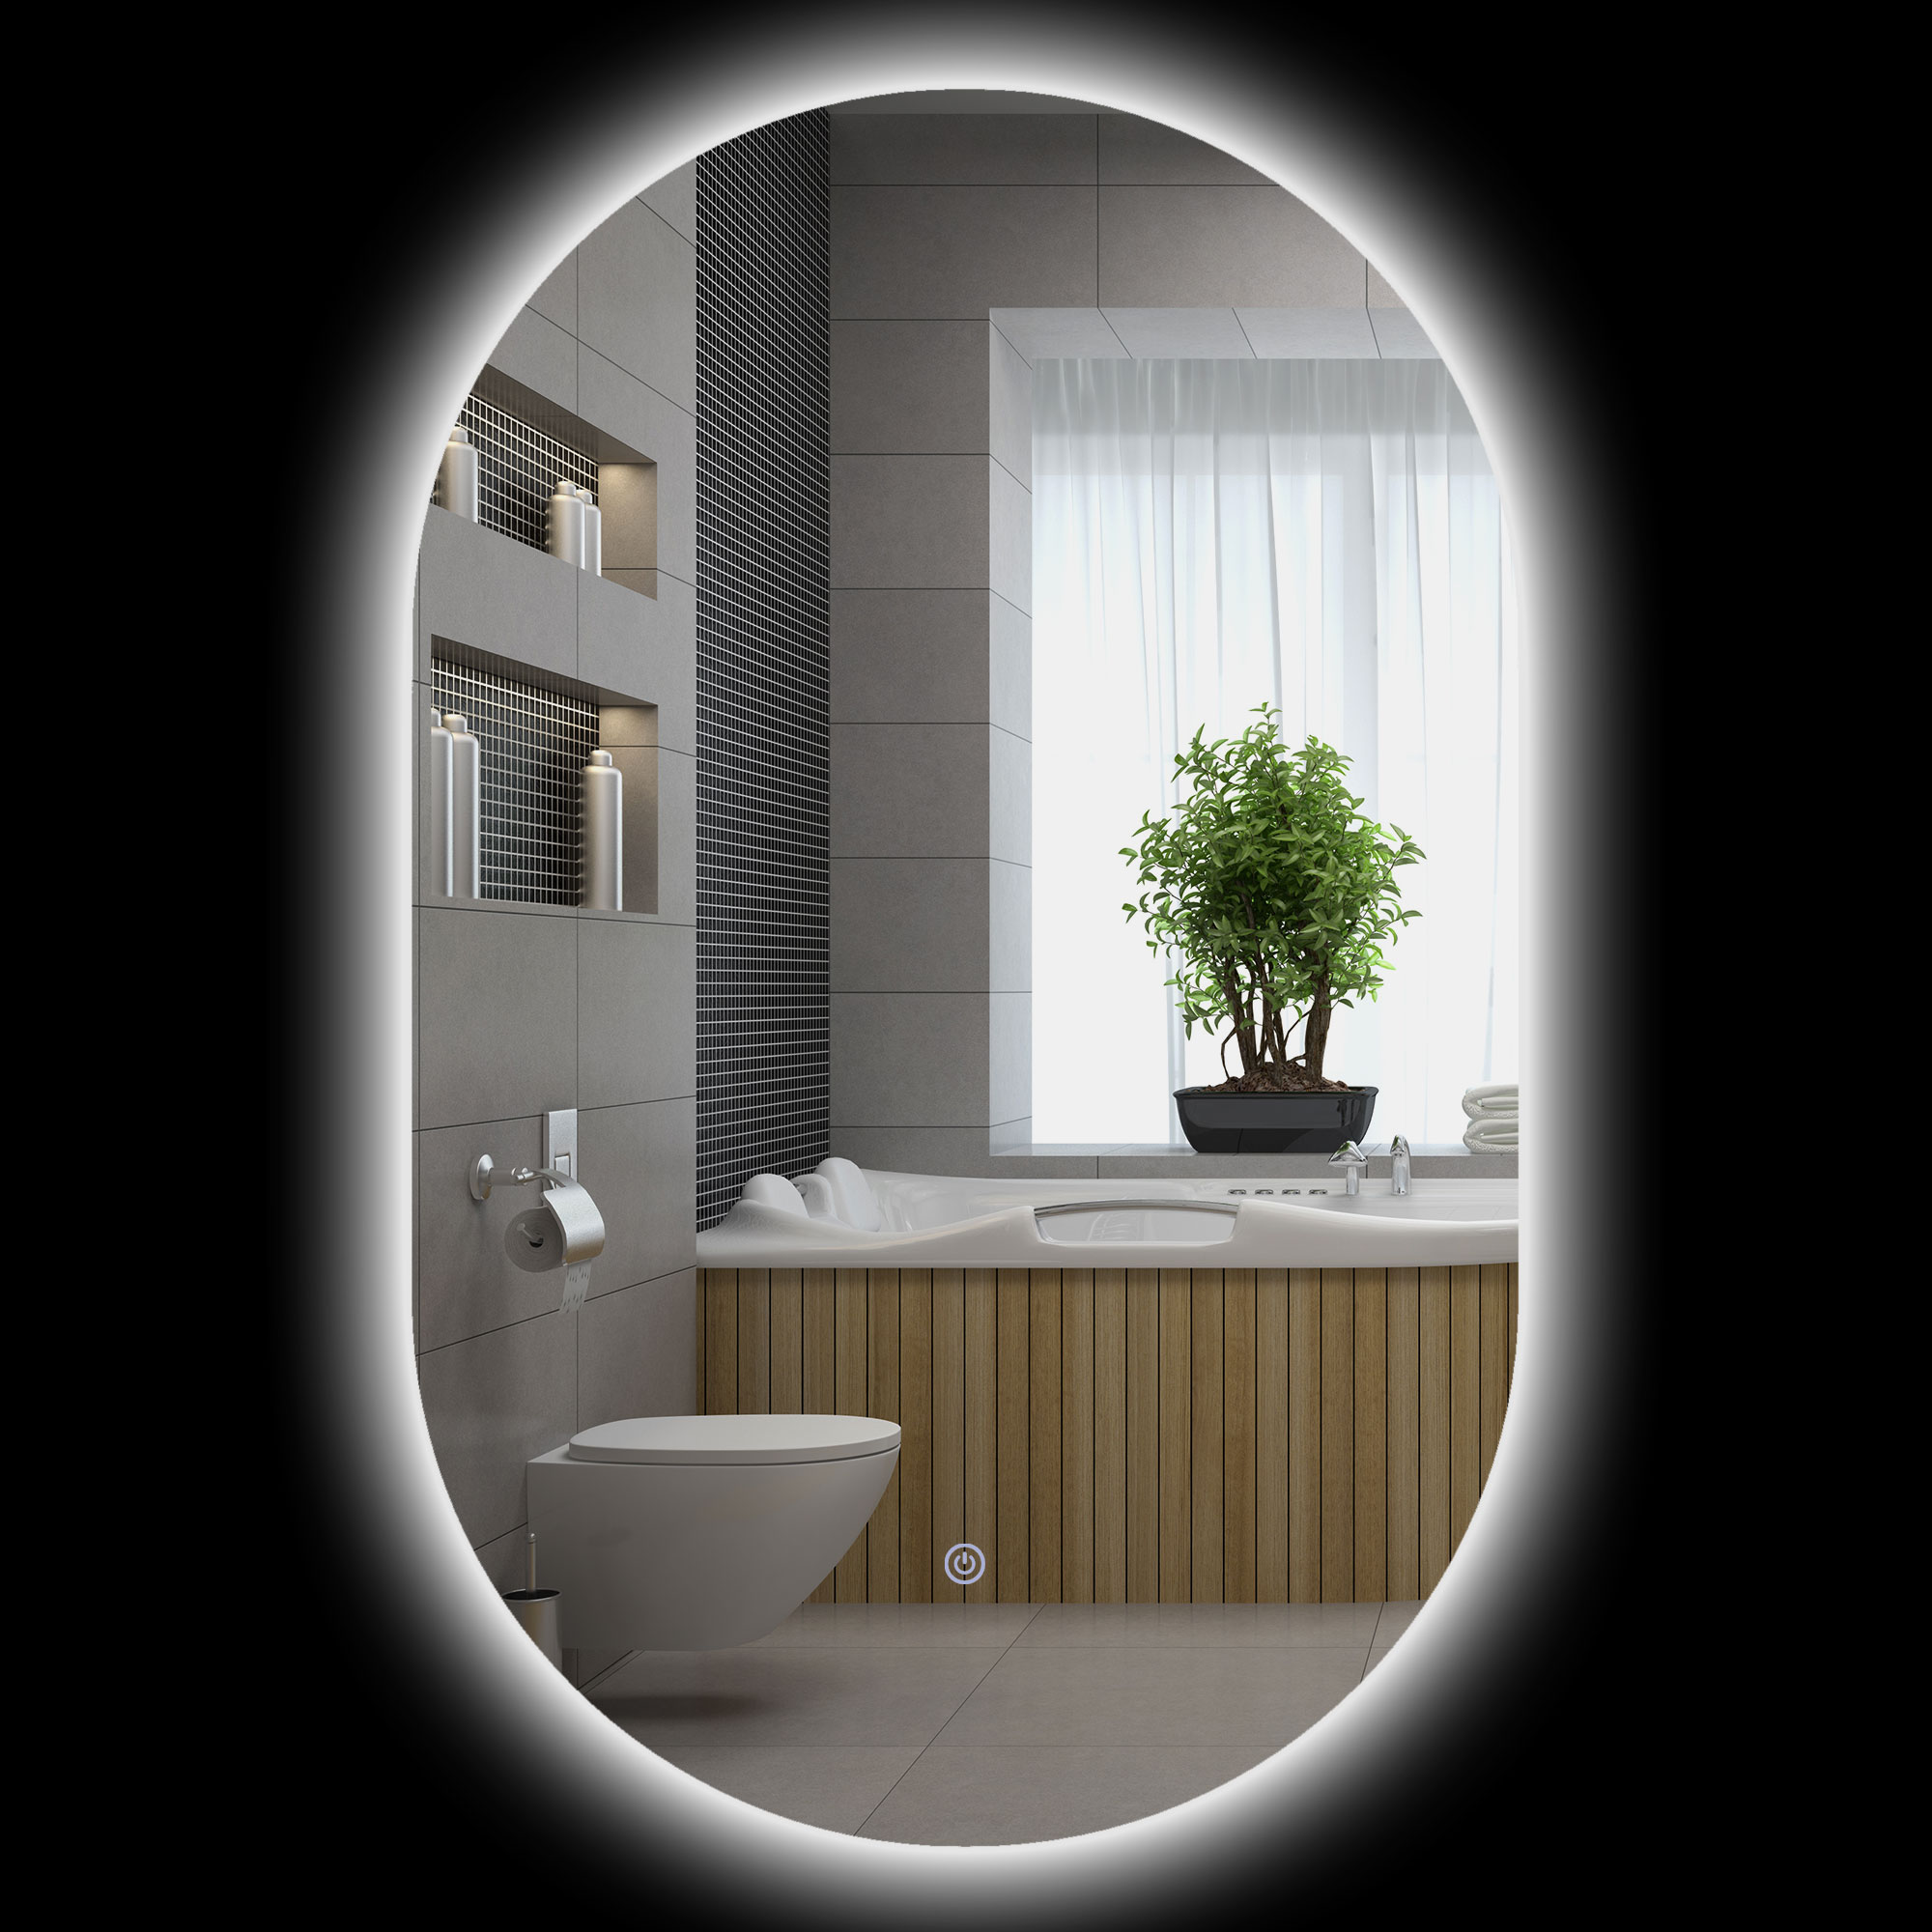 kleankin miroir ovale mural lumineux led salle de bain 81 x 51 cm 3 couleurs luminositÃ© rÃ©glable interrupteur tactile transparent